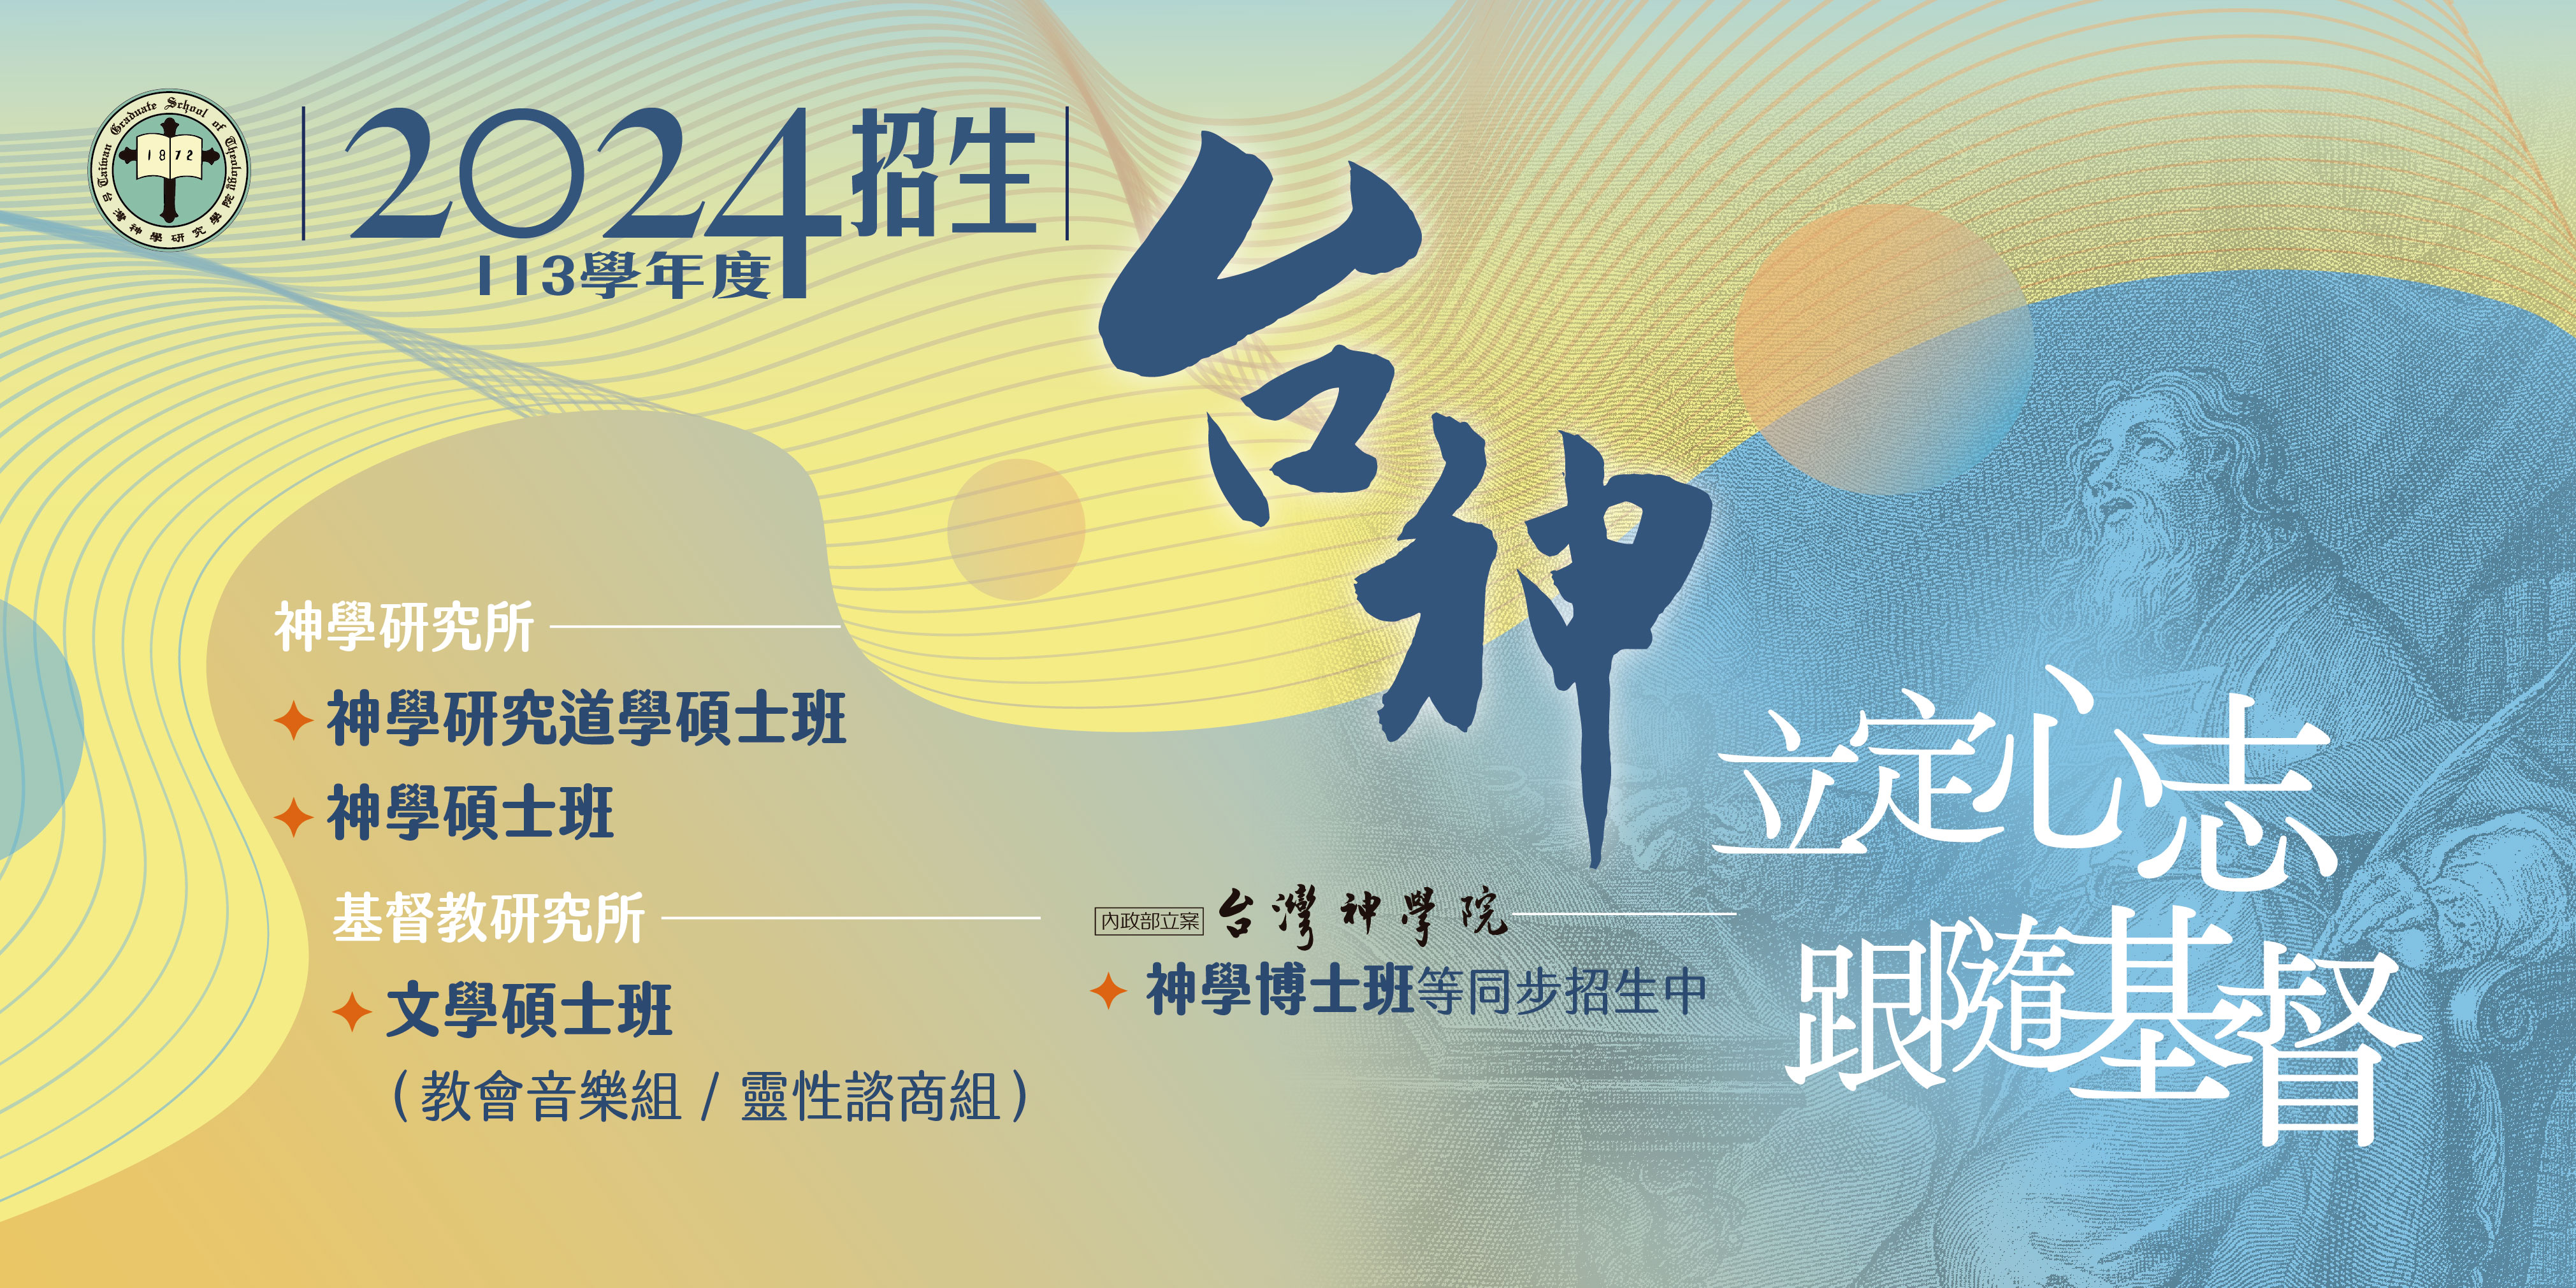 #65765 財團法人台灣神學院(2/24-3/1)底部廣告